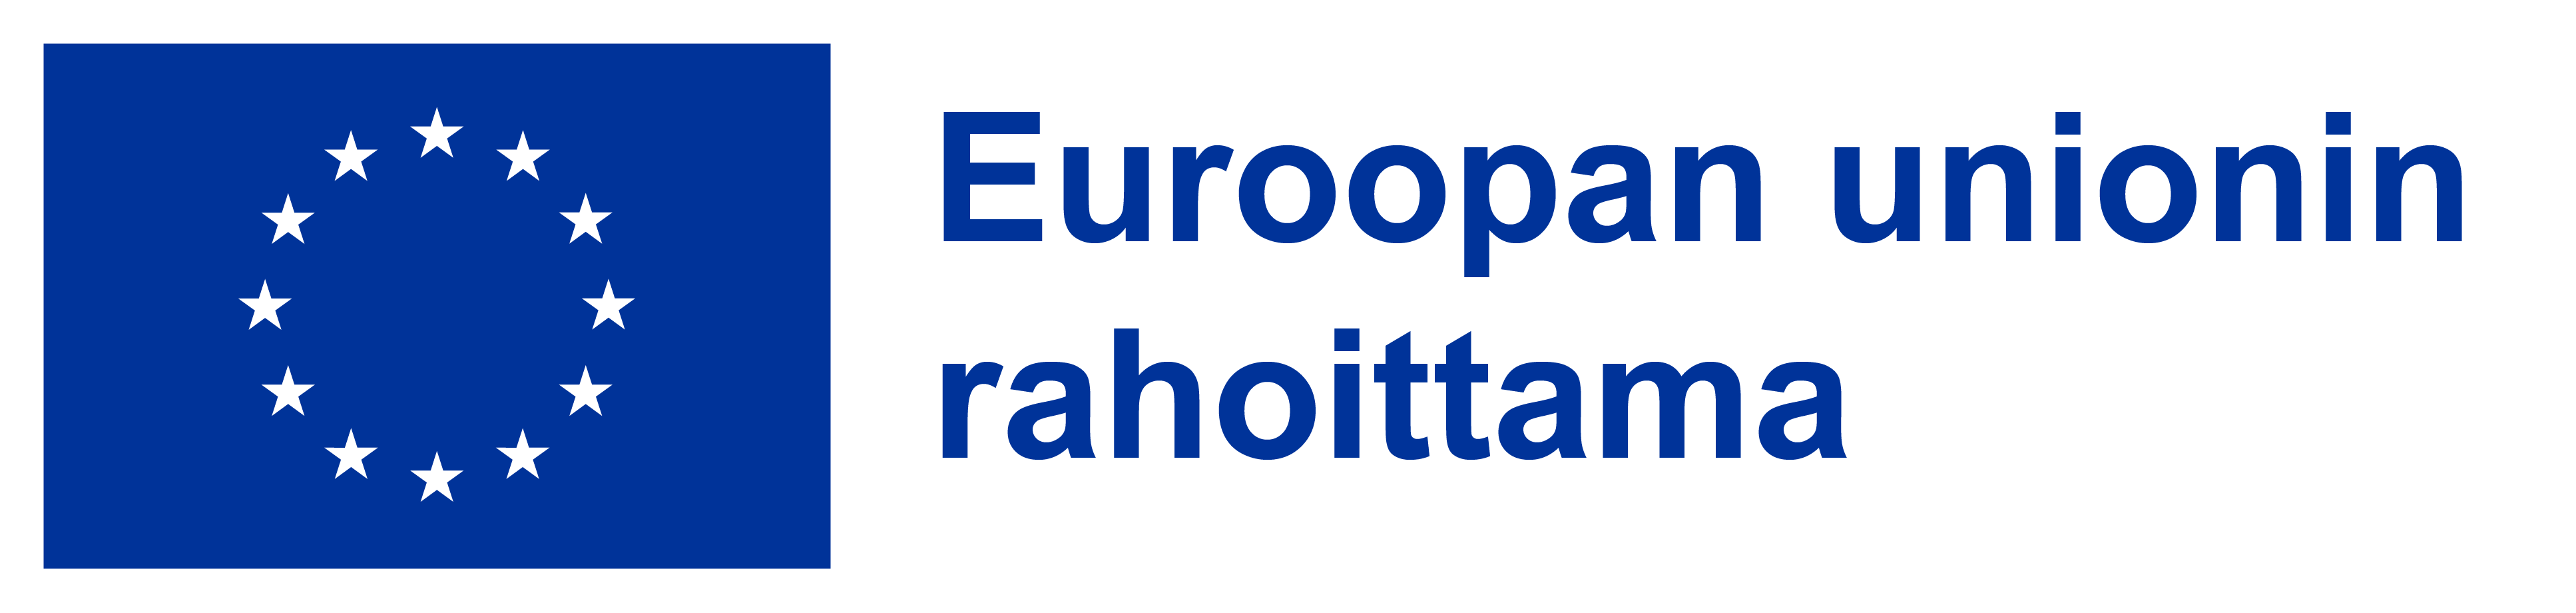 Euroopan union rahoittama - logo